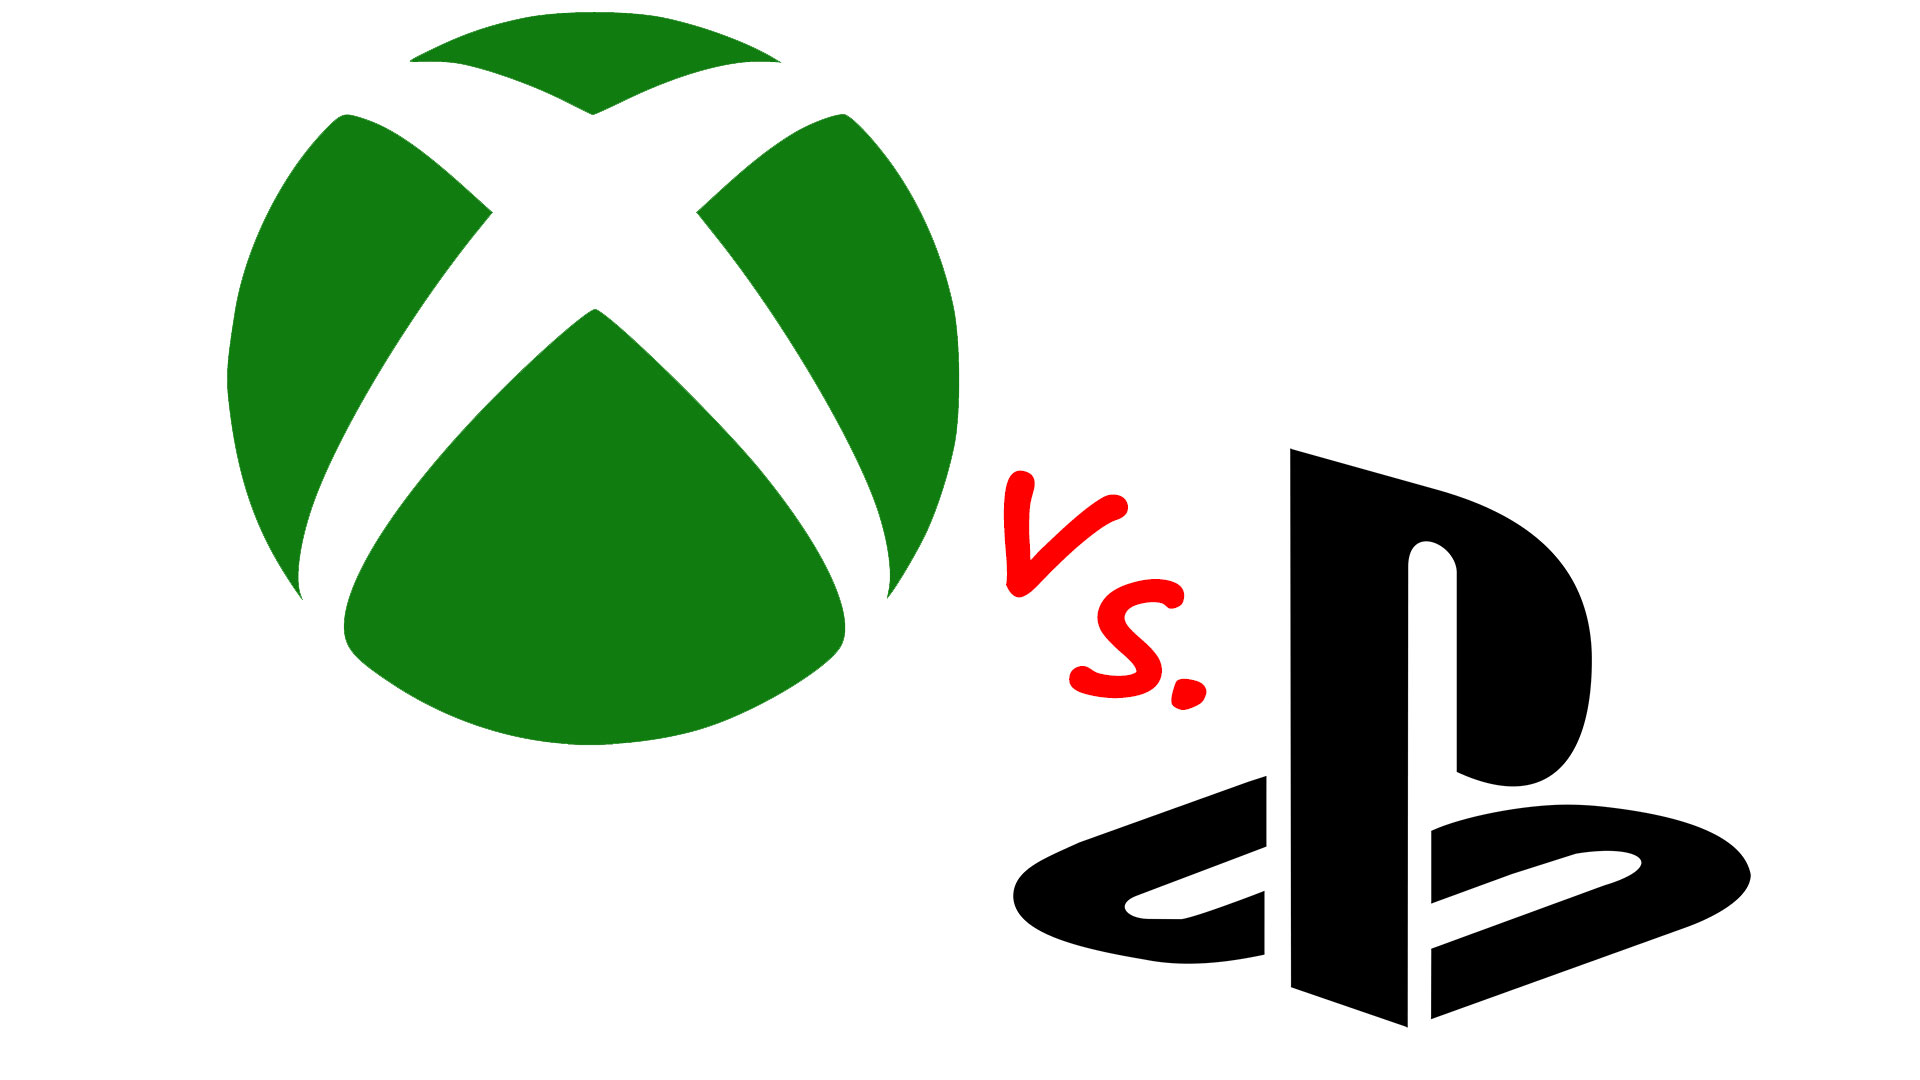 Xbox batte PlayStation nelle ricerche sul web